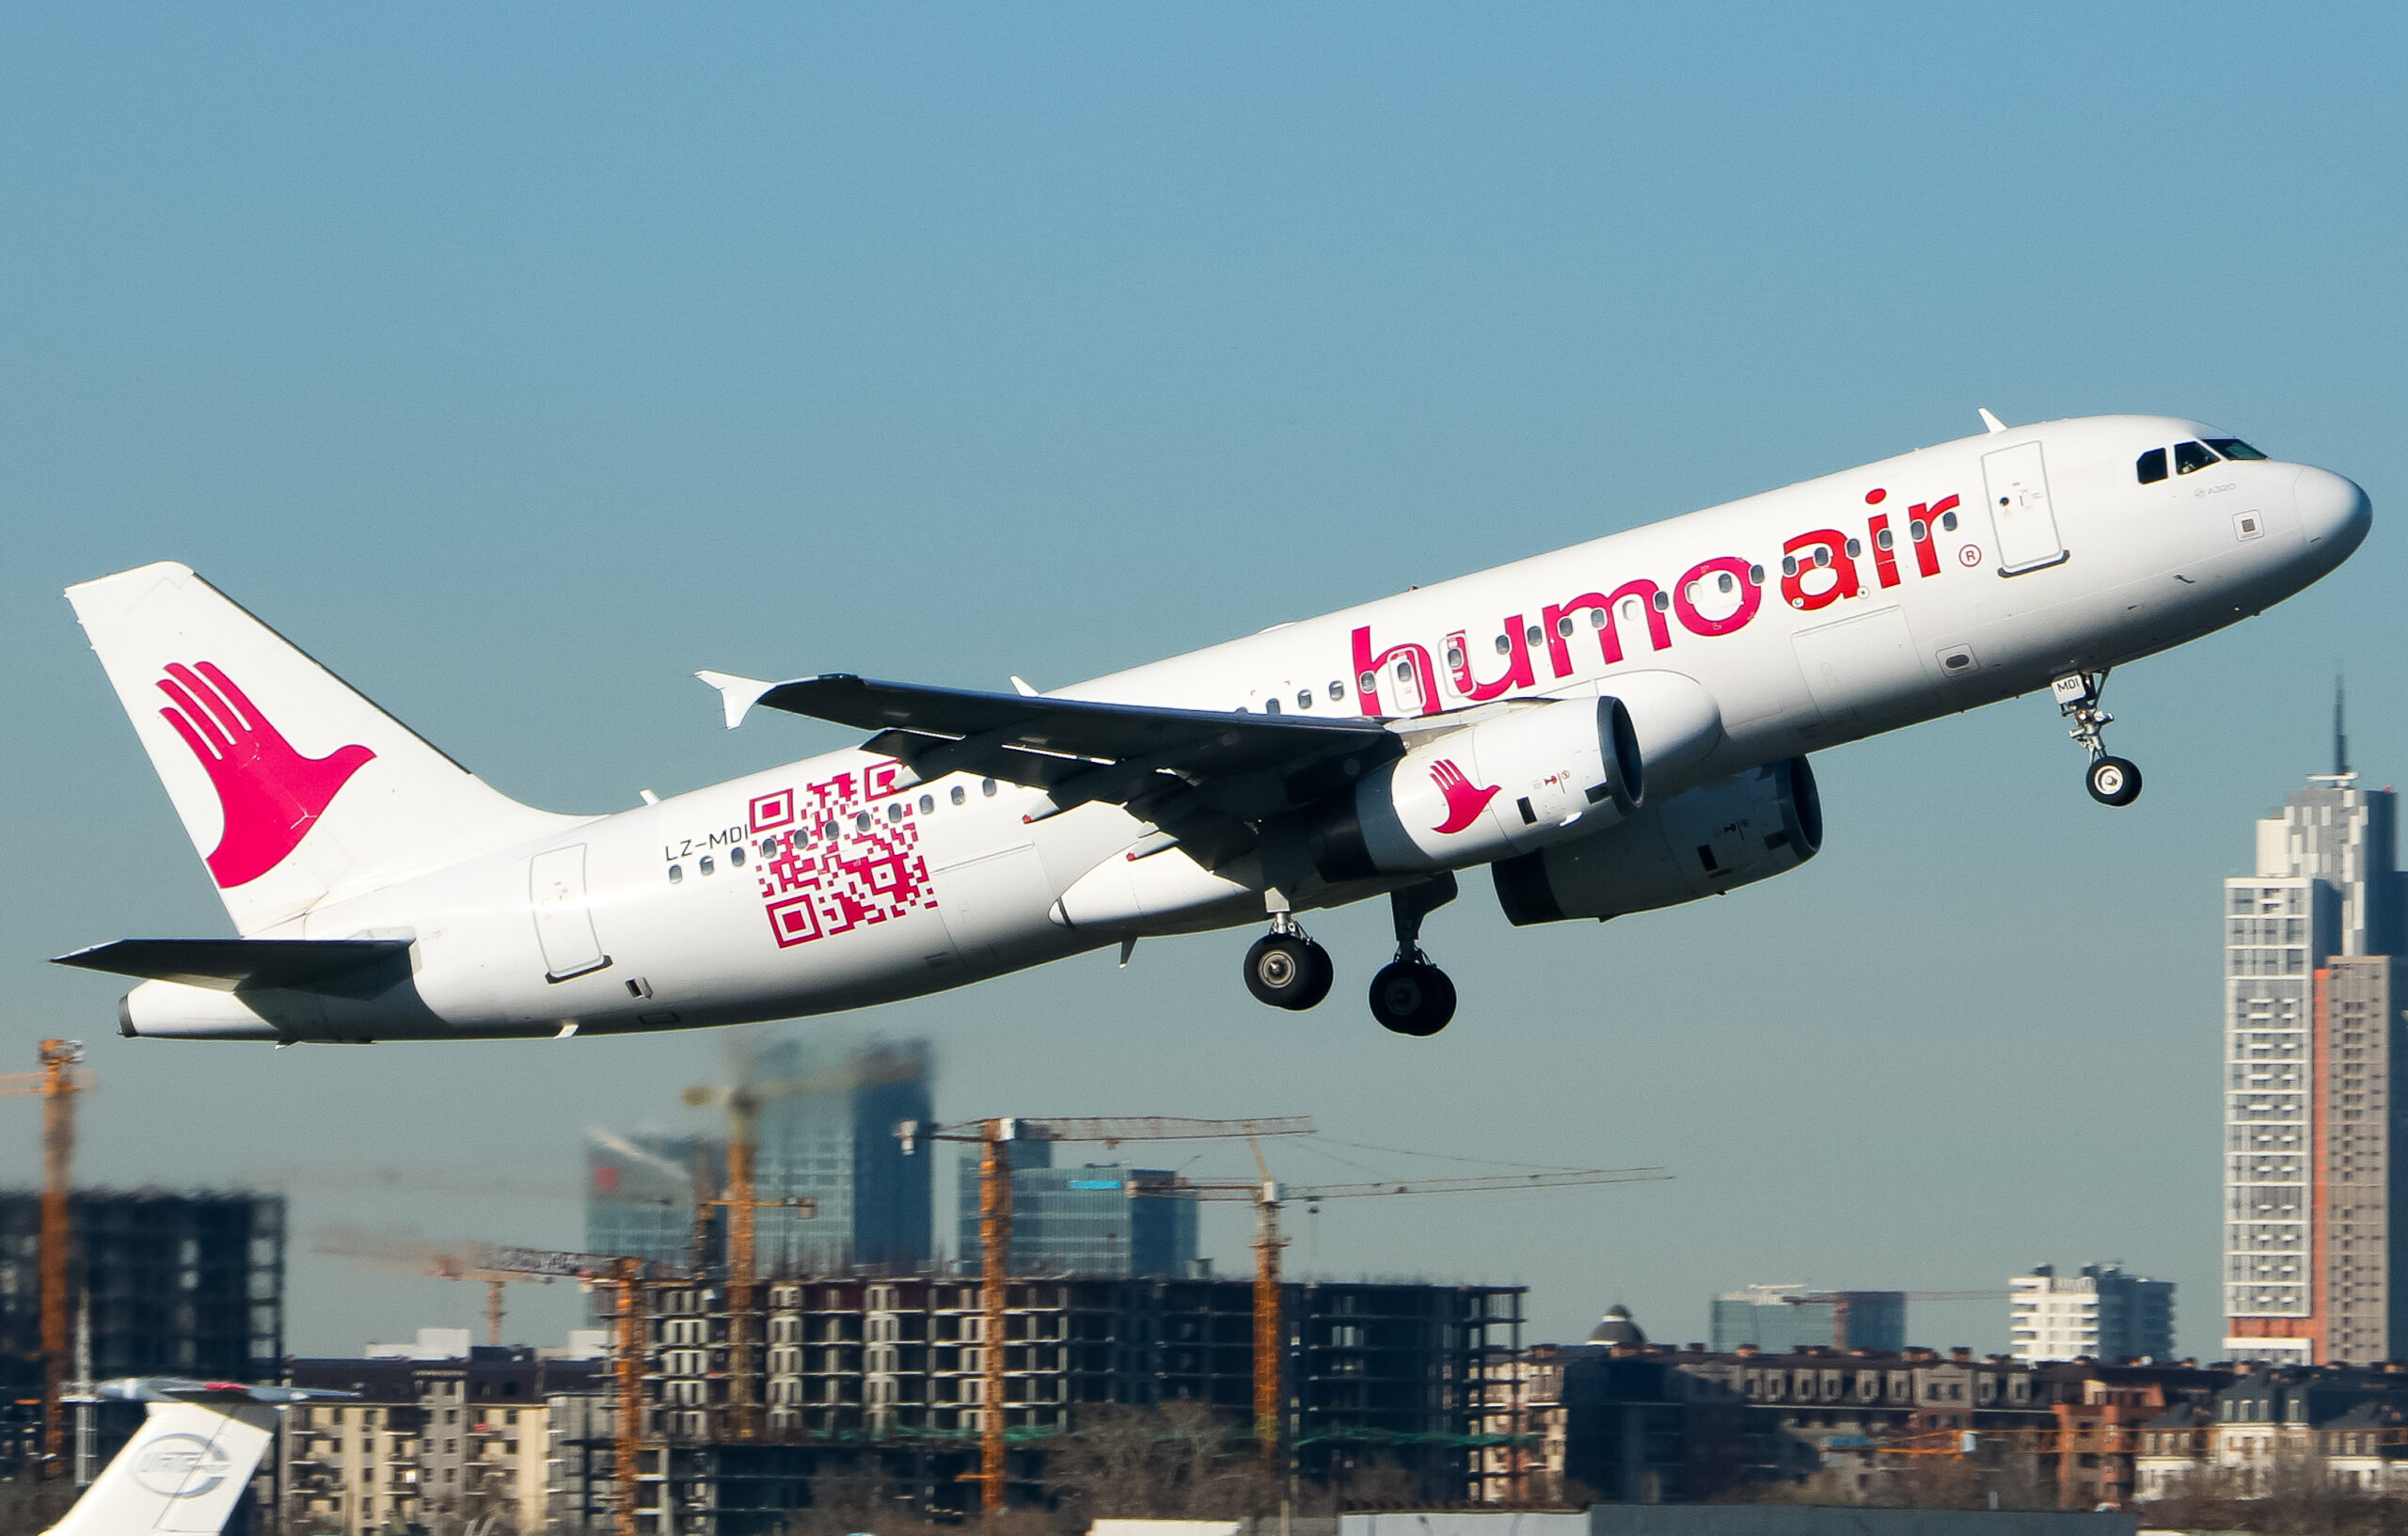 Авиакомпанию Humo Air признали виновной в нарушении прав потребителей